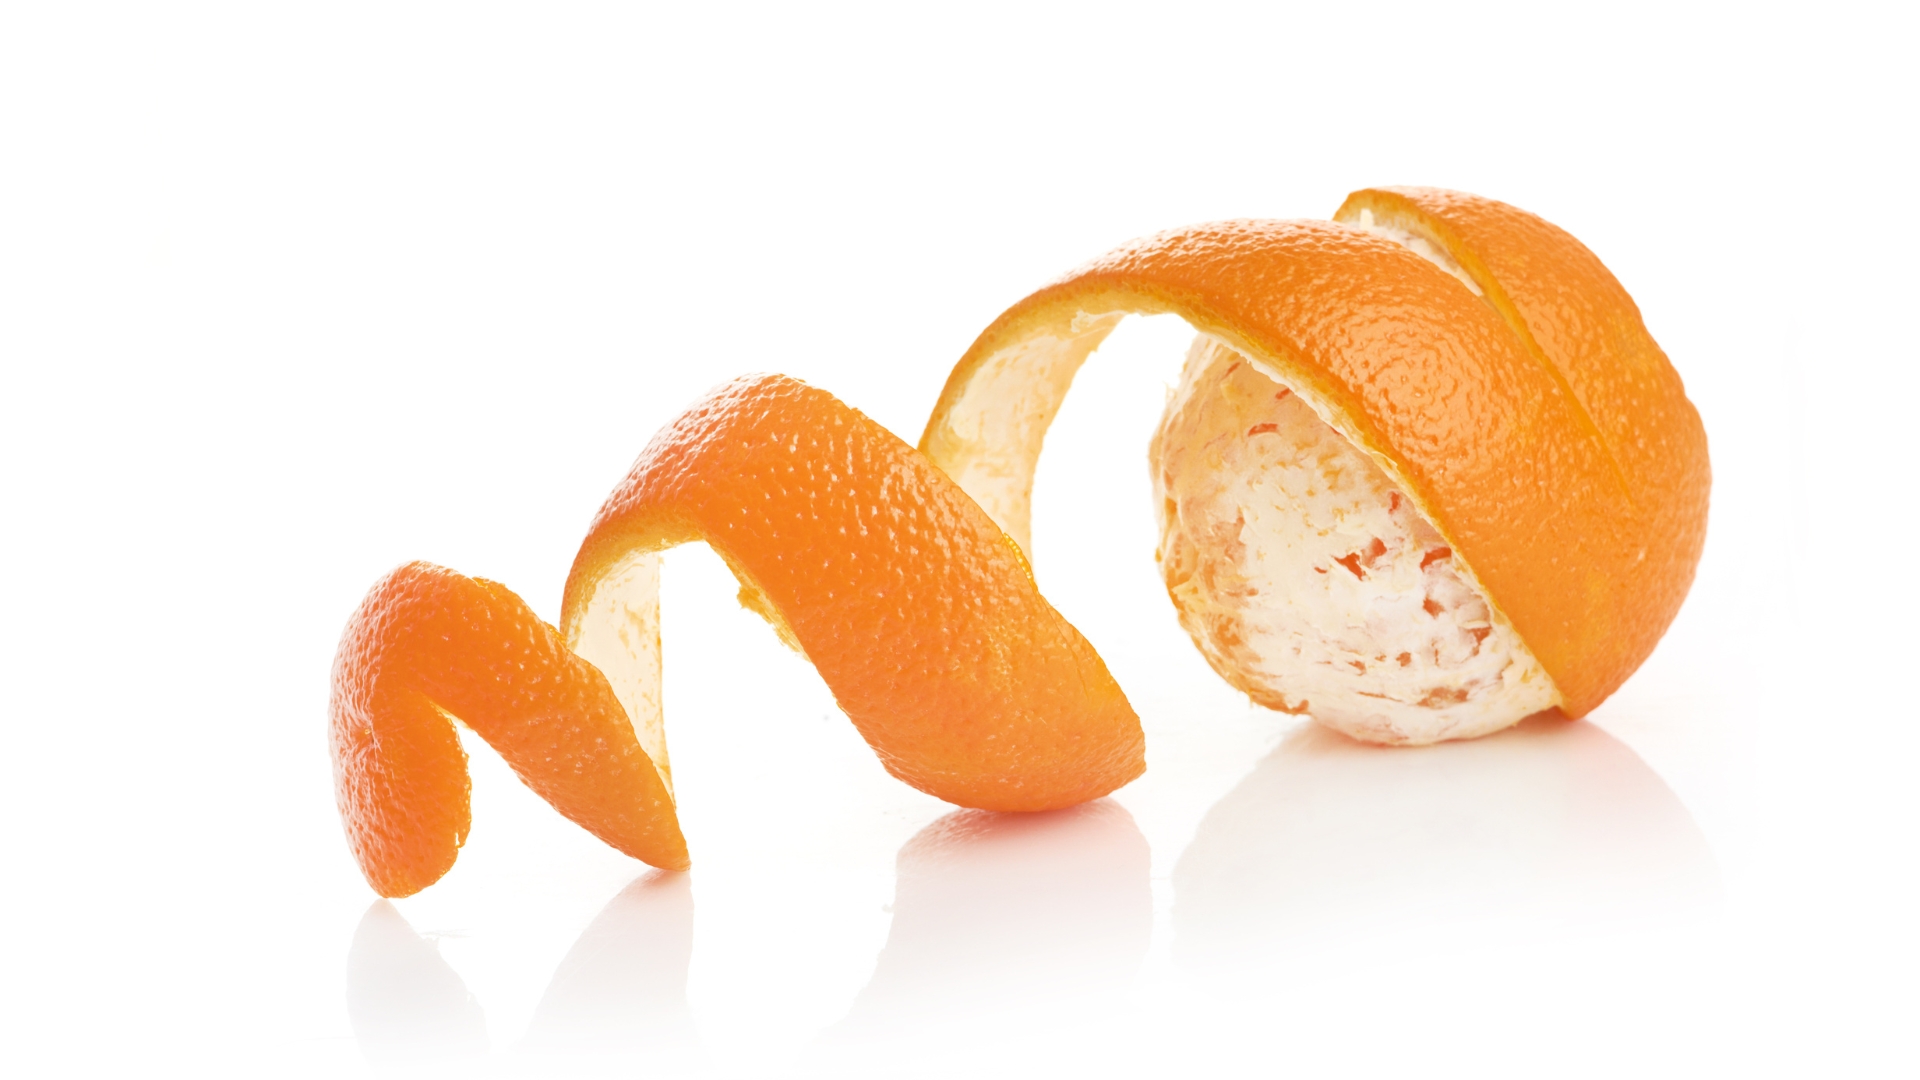 Casca de laranja com vinagre.